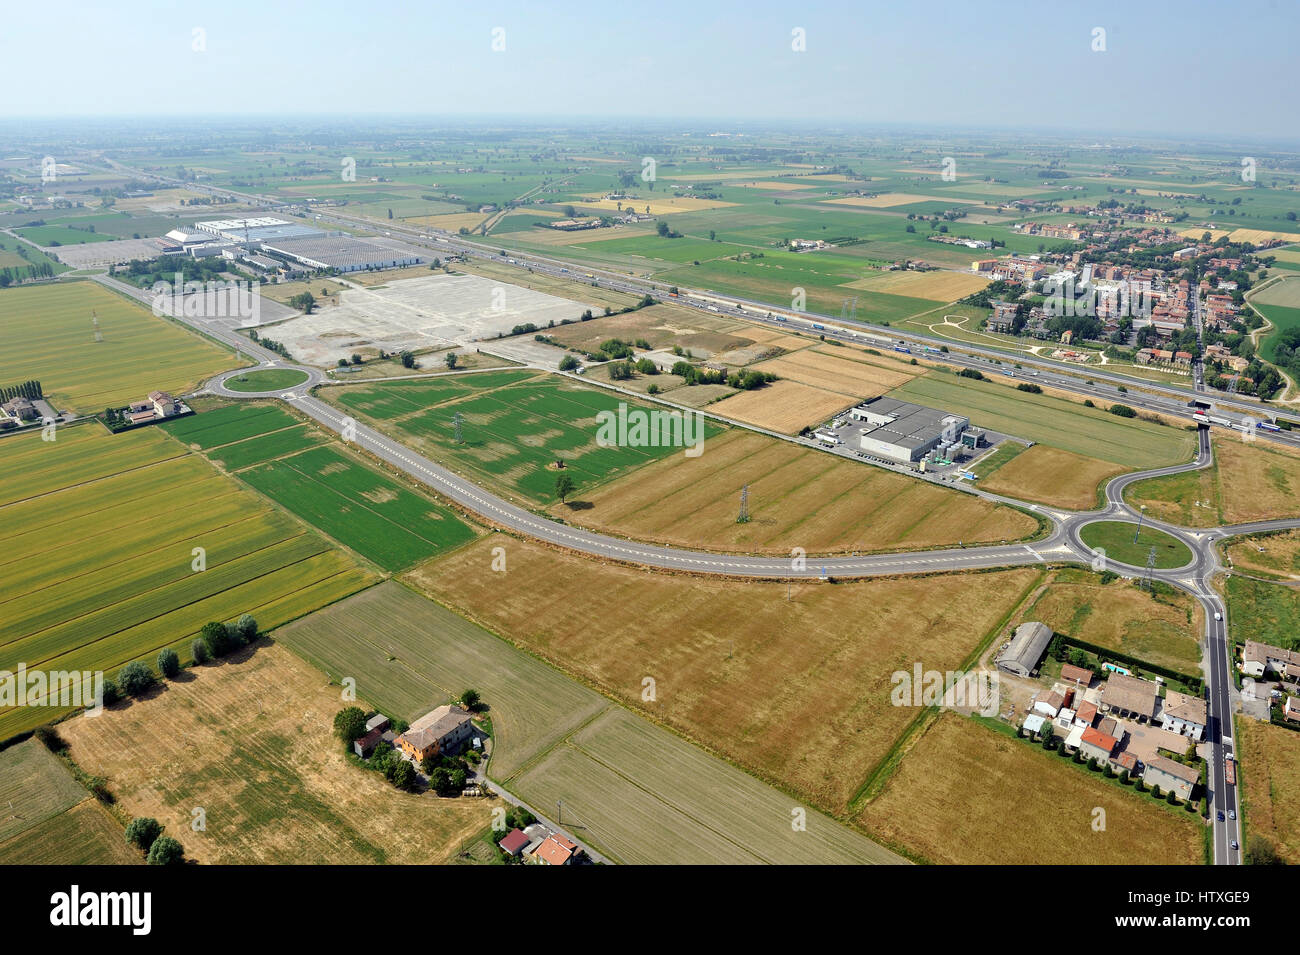 Vista aérea del nuevo centro comercial, el centro comercial, la construcción de condominios cerca de Parma, Emilia Romagna, Italiy, autopista A1 Foto de stock